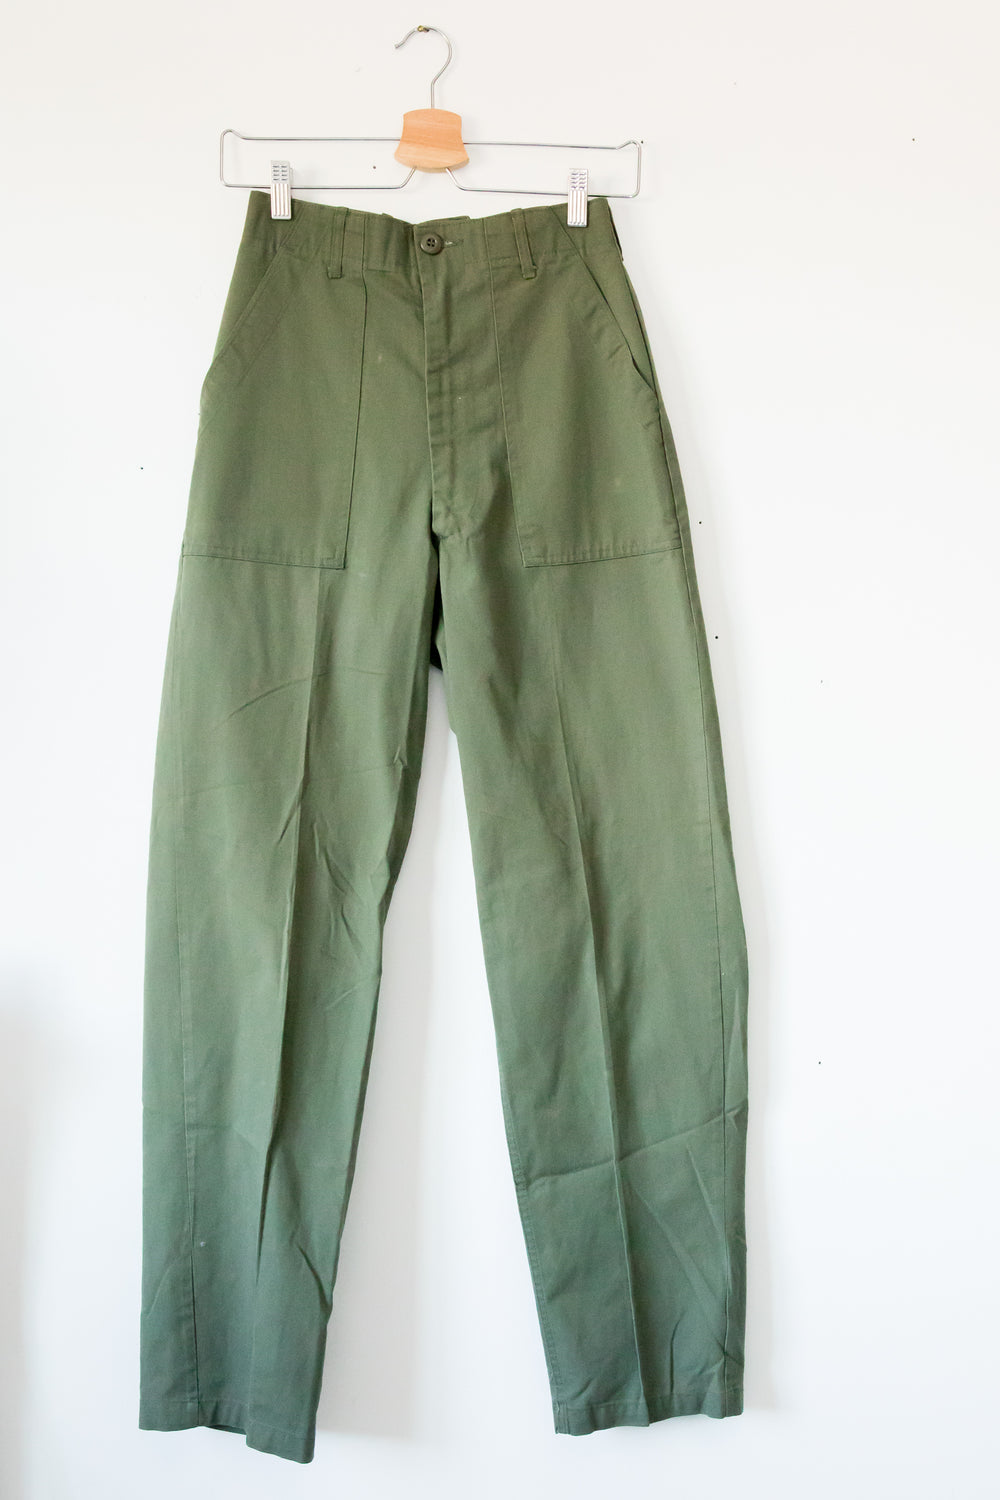 Vintage Army Pant 3